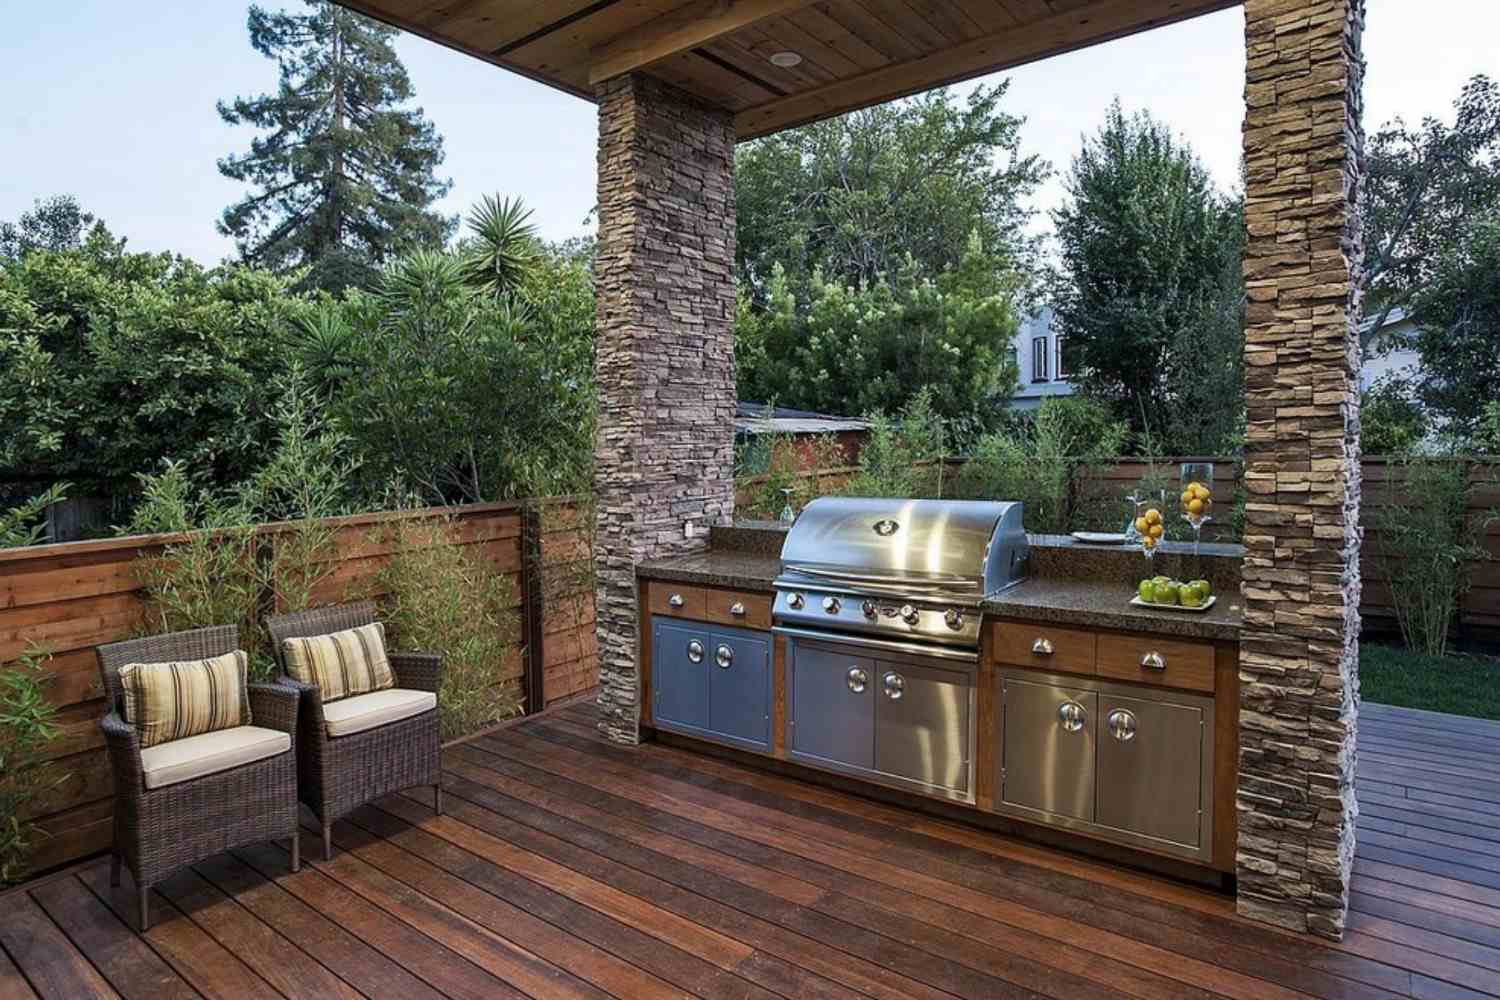 2019-boulder-outdoor-kitchen-grill